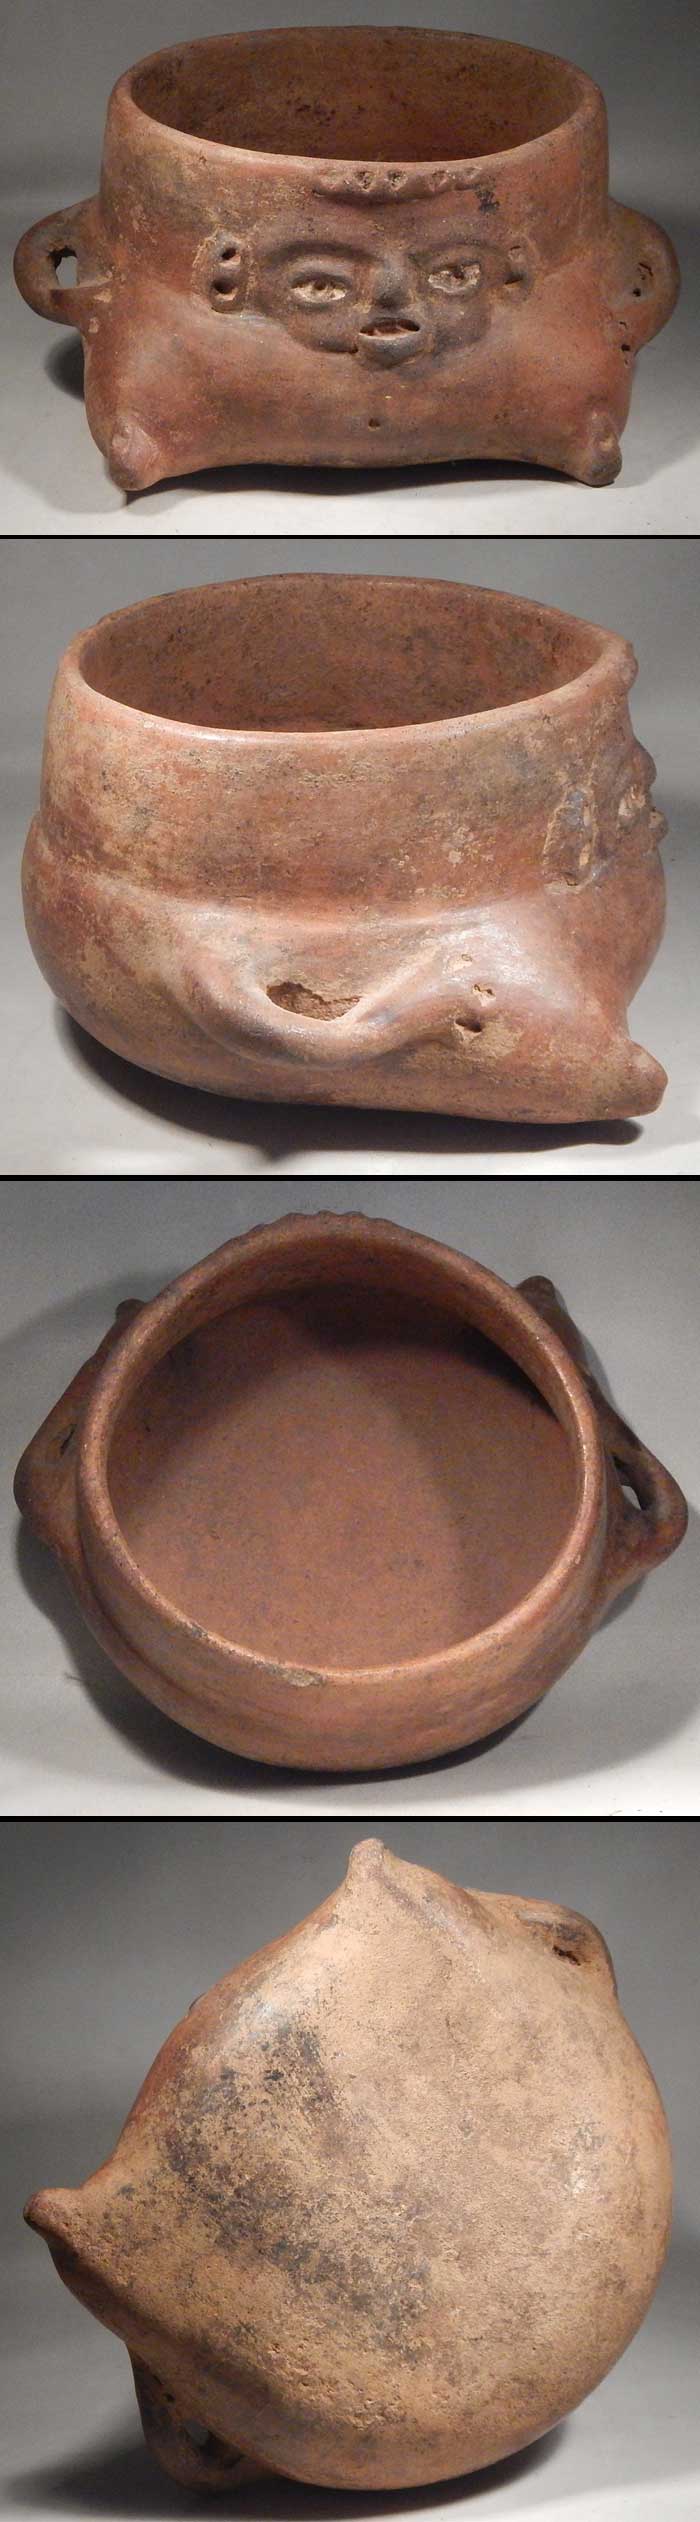 Pre-Classic Tlatilco Olmecoid Figural Bowl Vessel